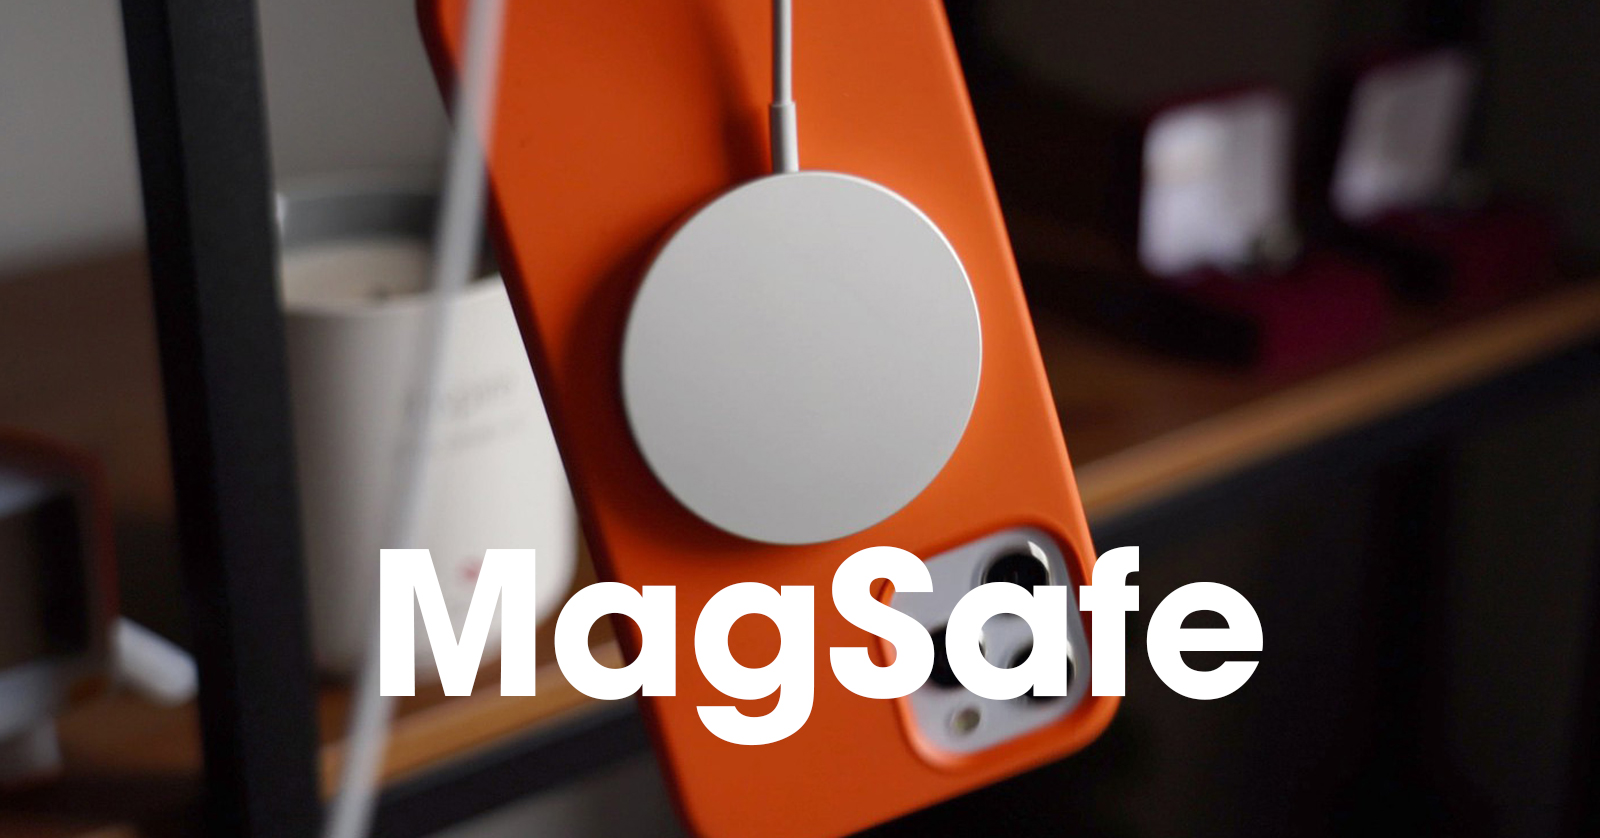 MagSafe của Apple giúp gắn các mẫu iPhone 12 vào đúng vị trí trên đế sạc